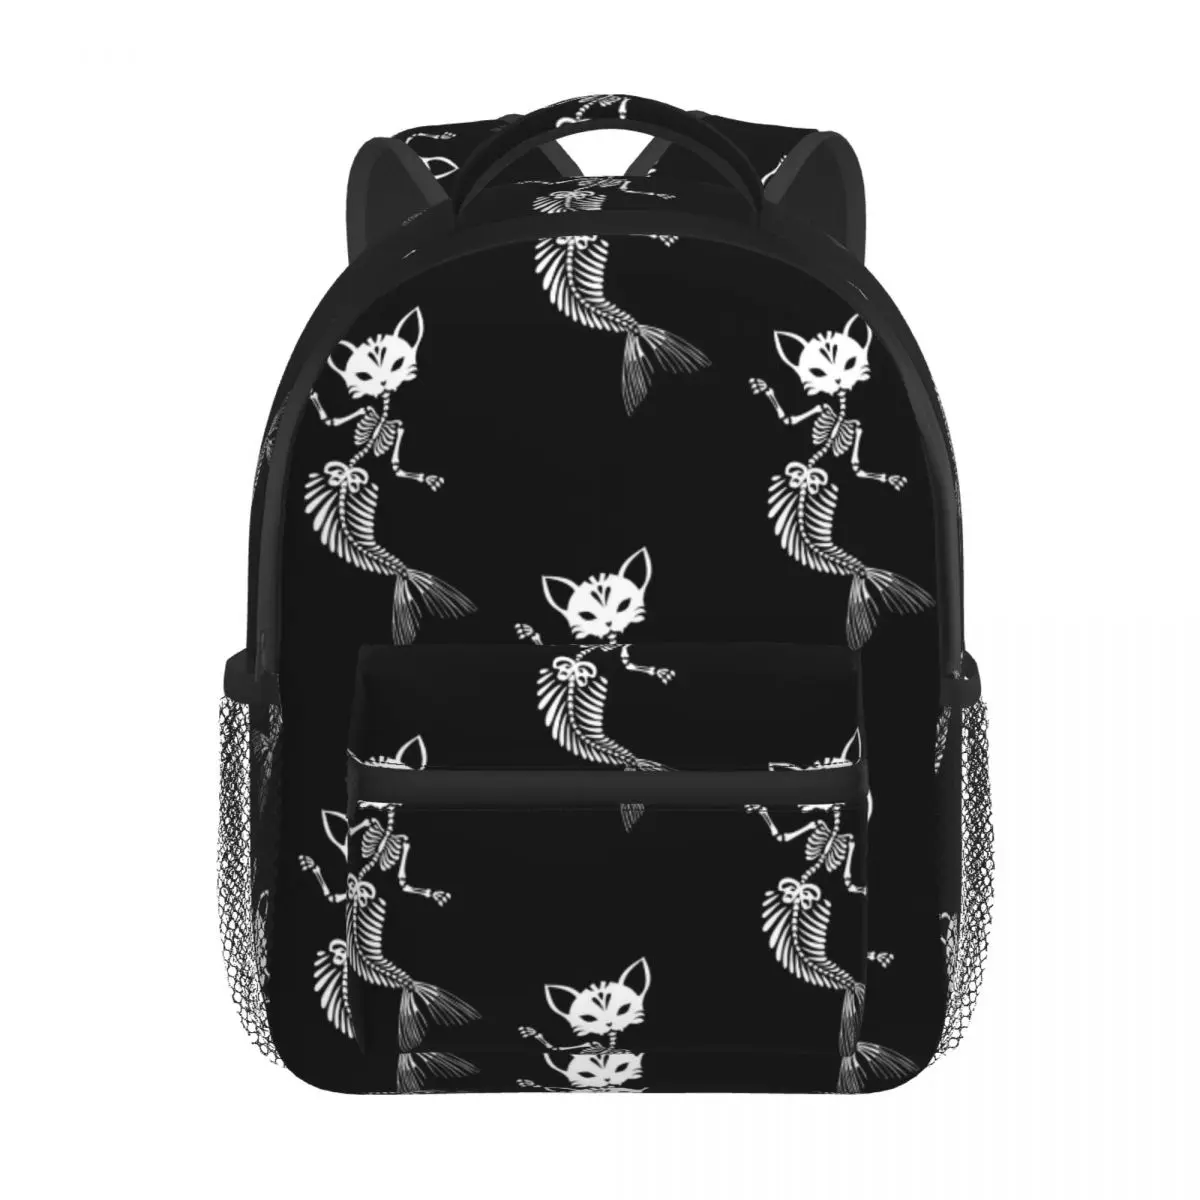 Skeletons Cat With Tail Of Mermaid Pattern Baby Backpack Kindergarten Schoolbag Kids Children School Bag